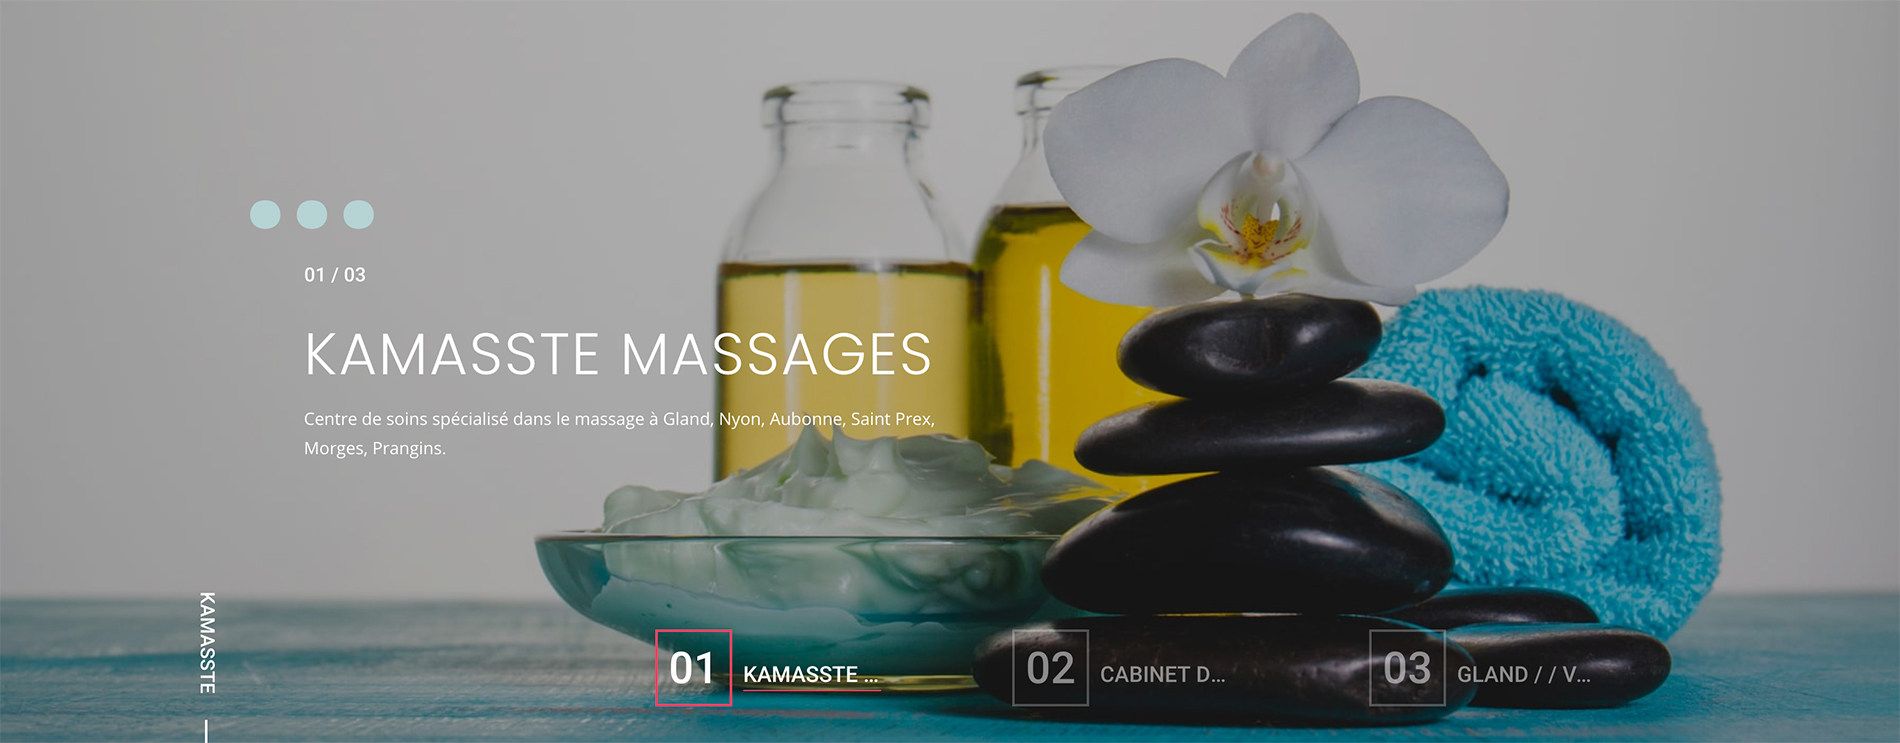 Kamasste Massages thérapeutiques à Gland